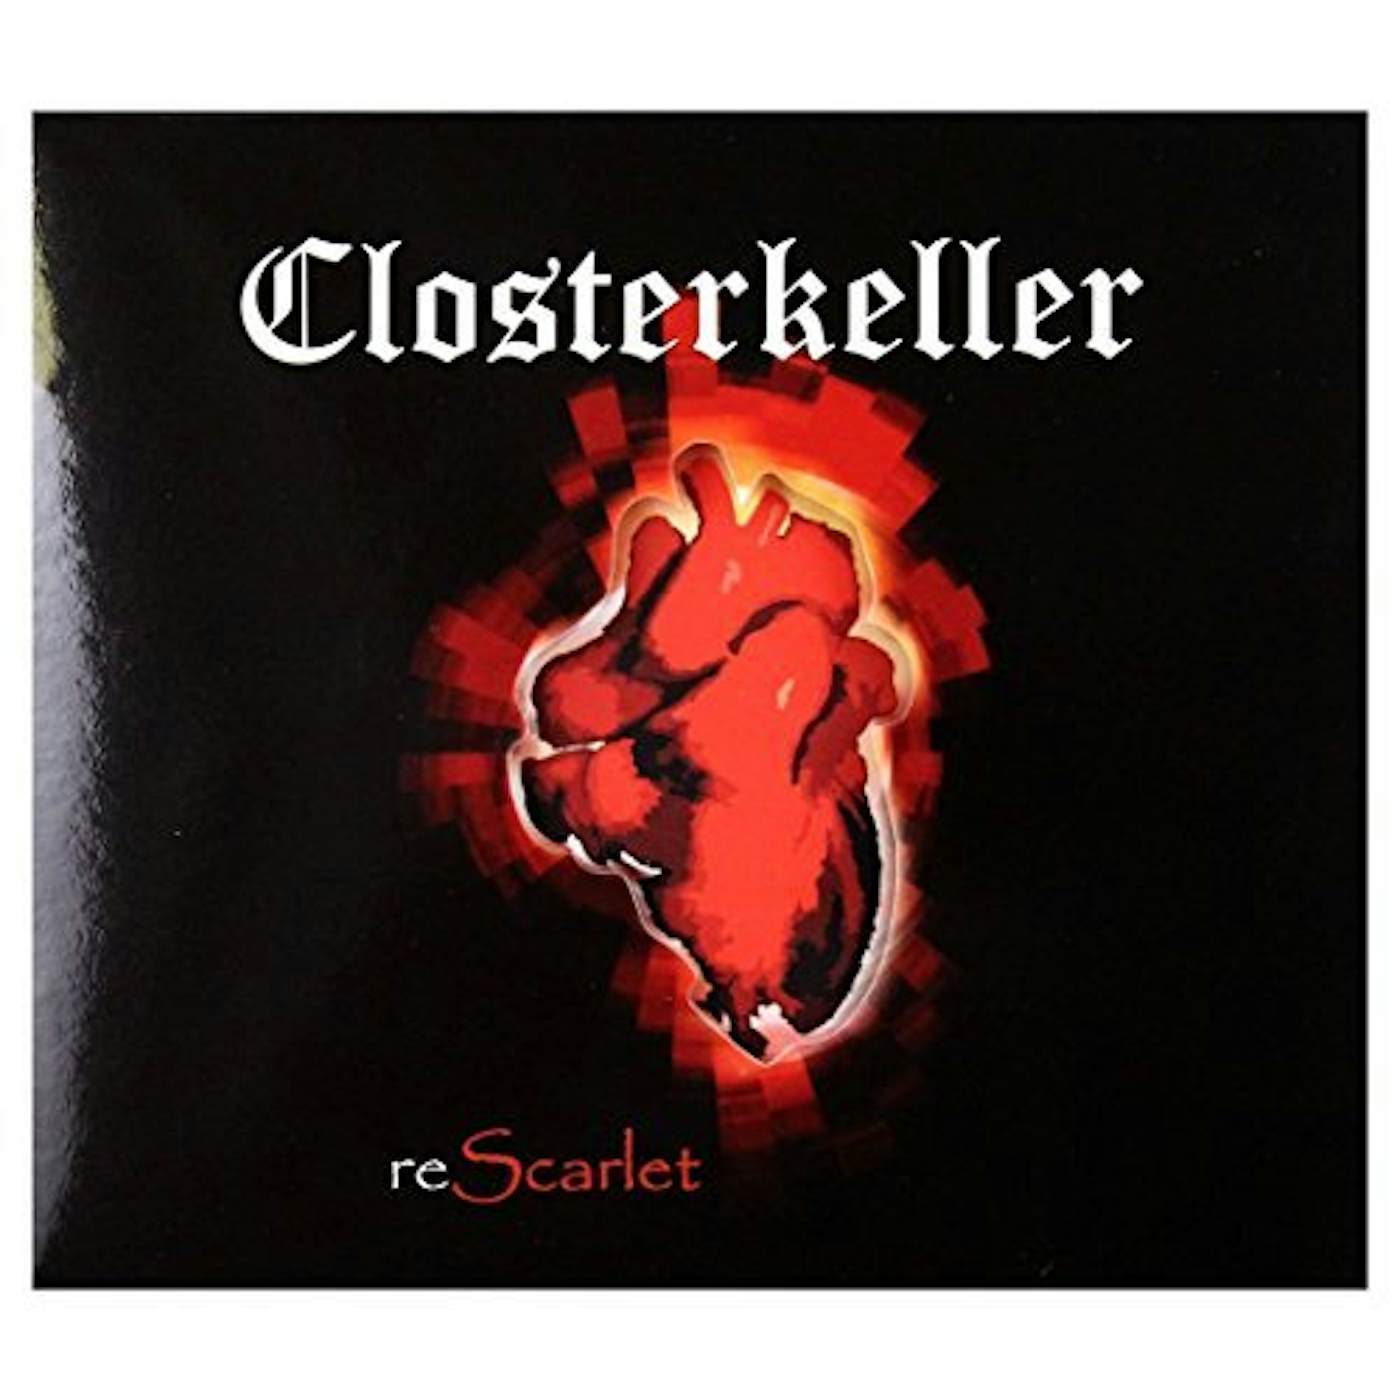 Closterkeller RESCARLET CD